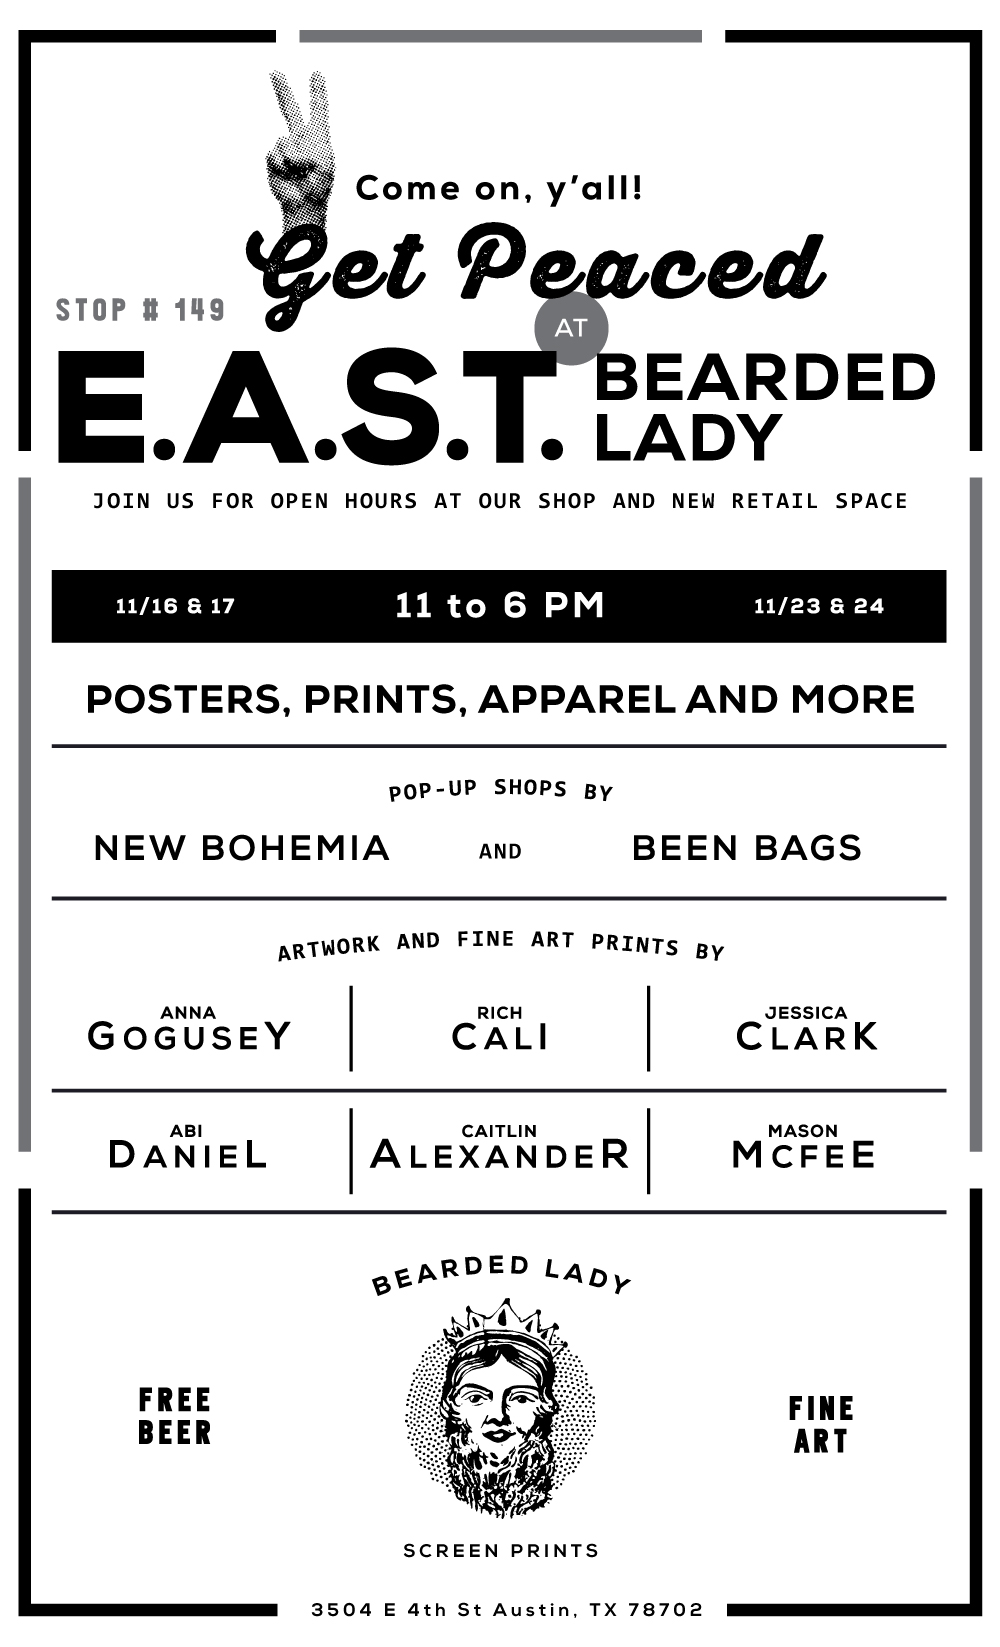 EAST-bearded-lady-big